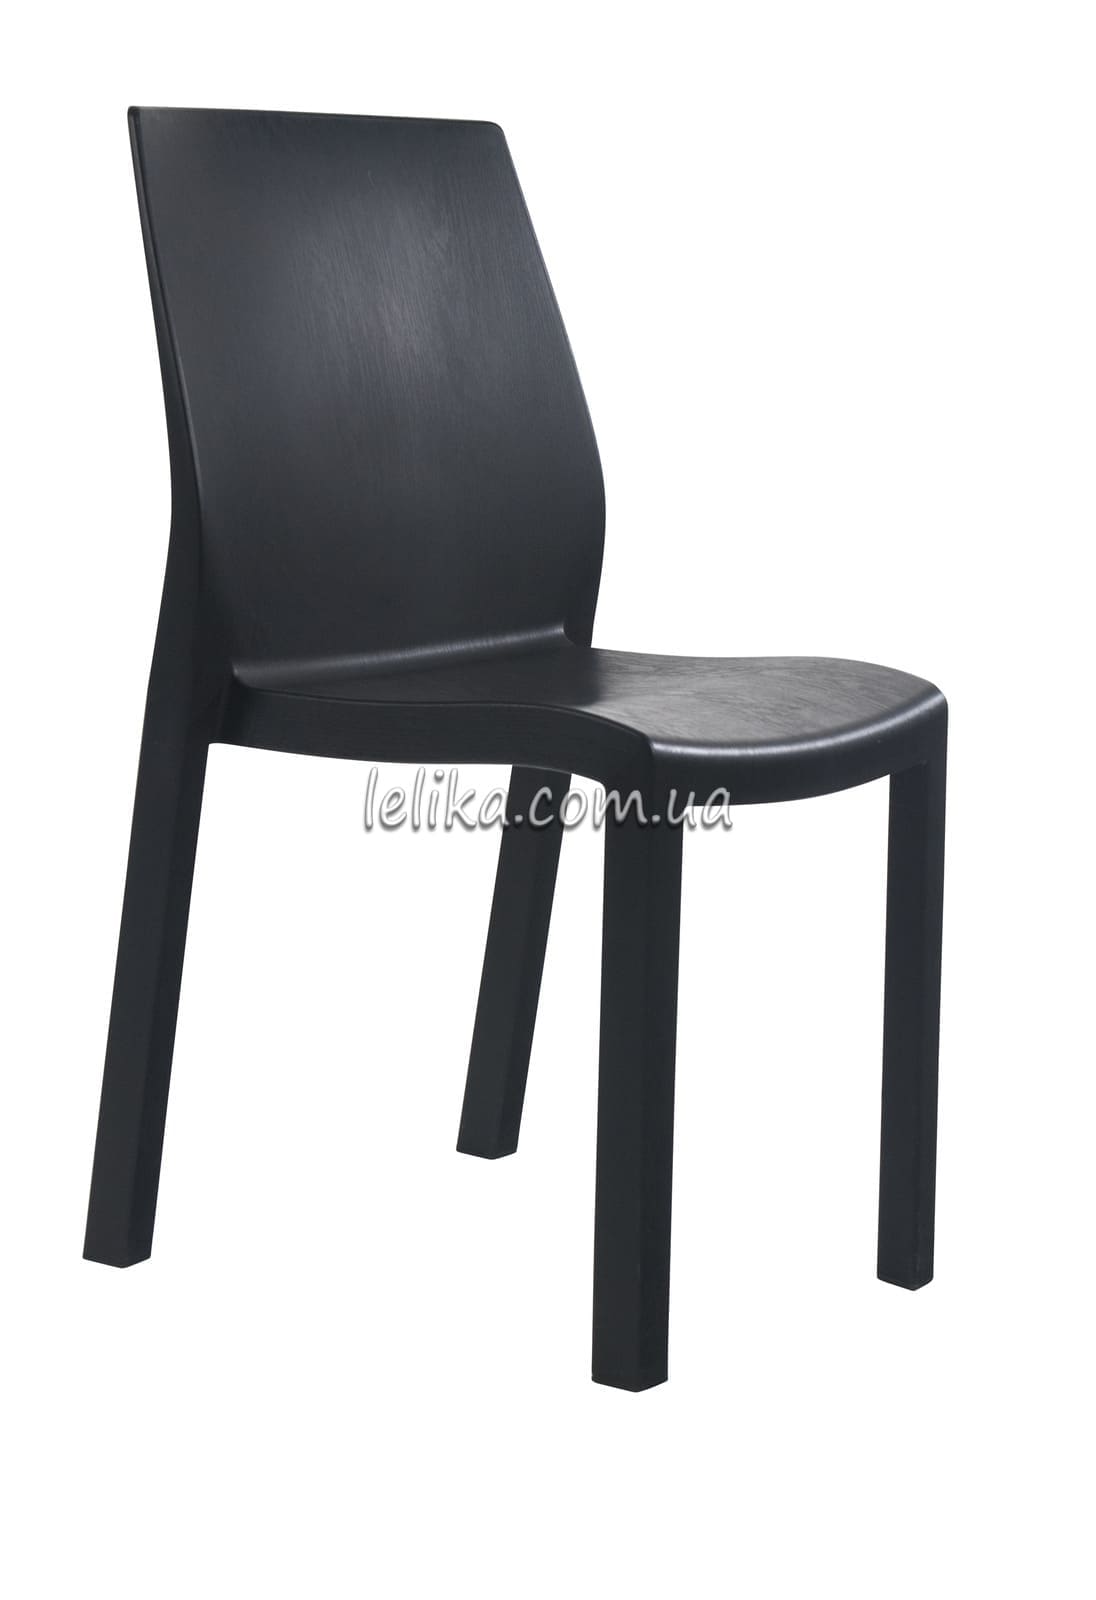 Кресло пластиковое все цвета, дизайн